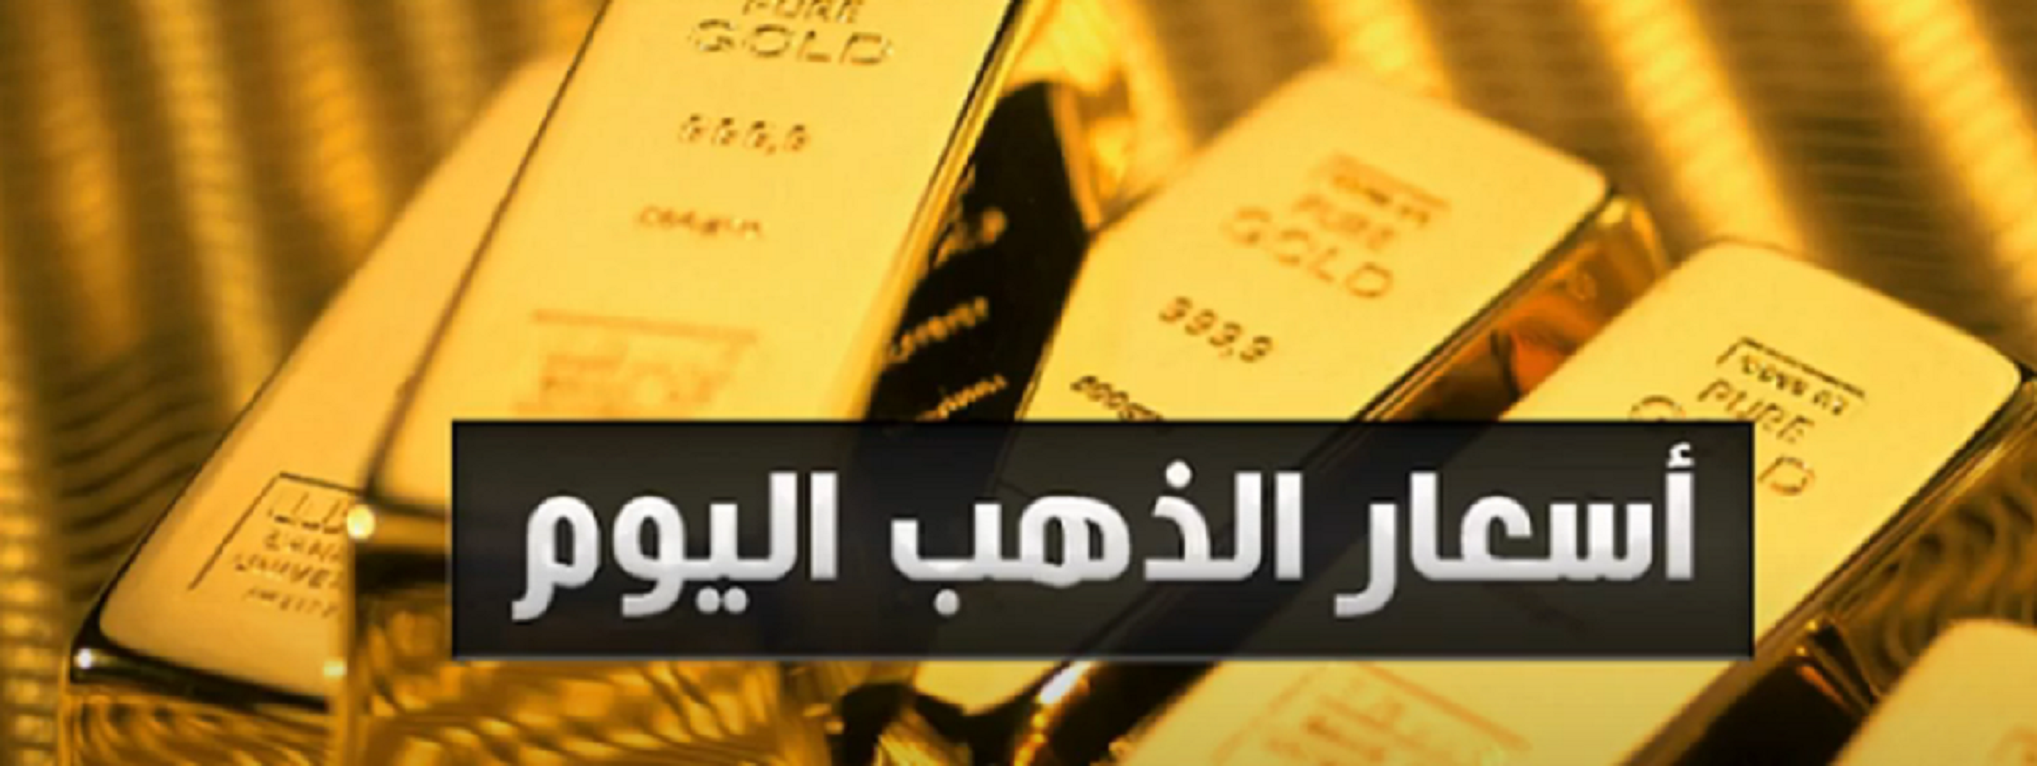 متوسط سعر الذهب في الكويت اليوم الأحد 31/1/2021 بالدينار الكويتي و الدولار الأمريكي